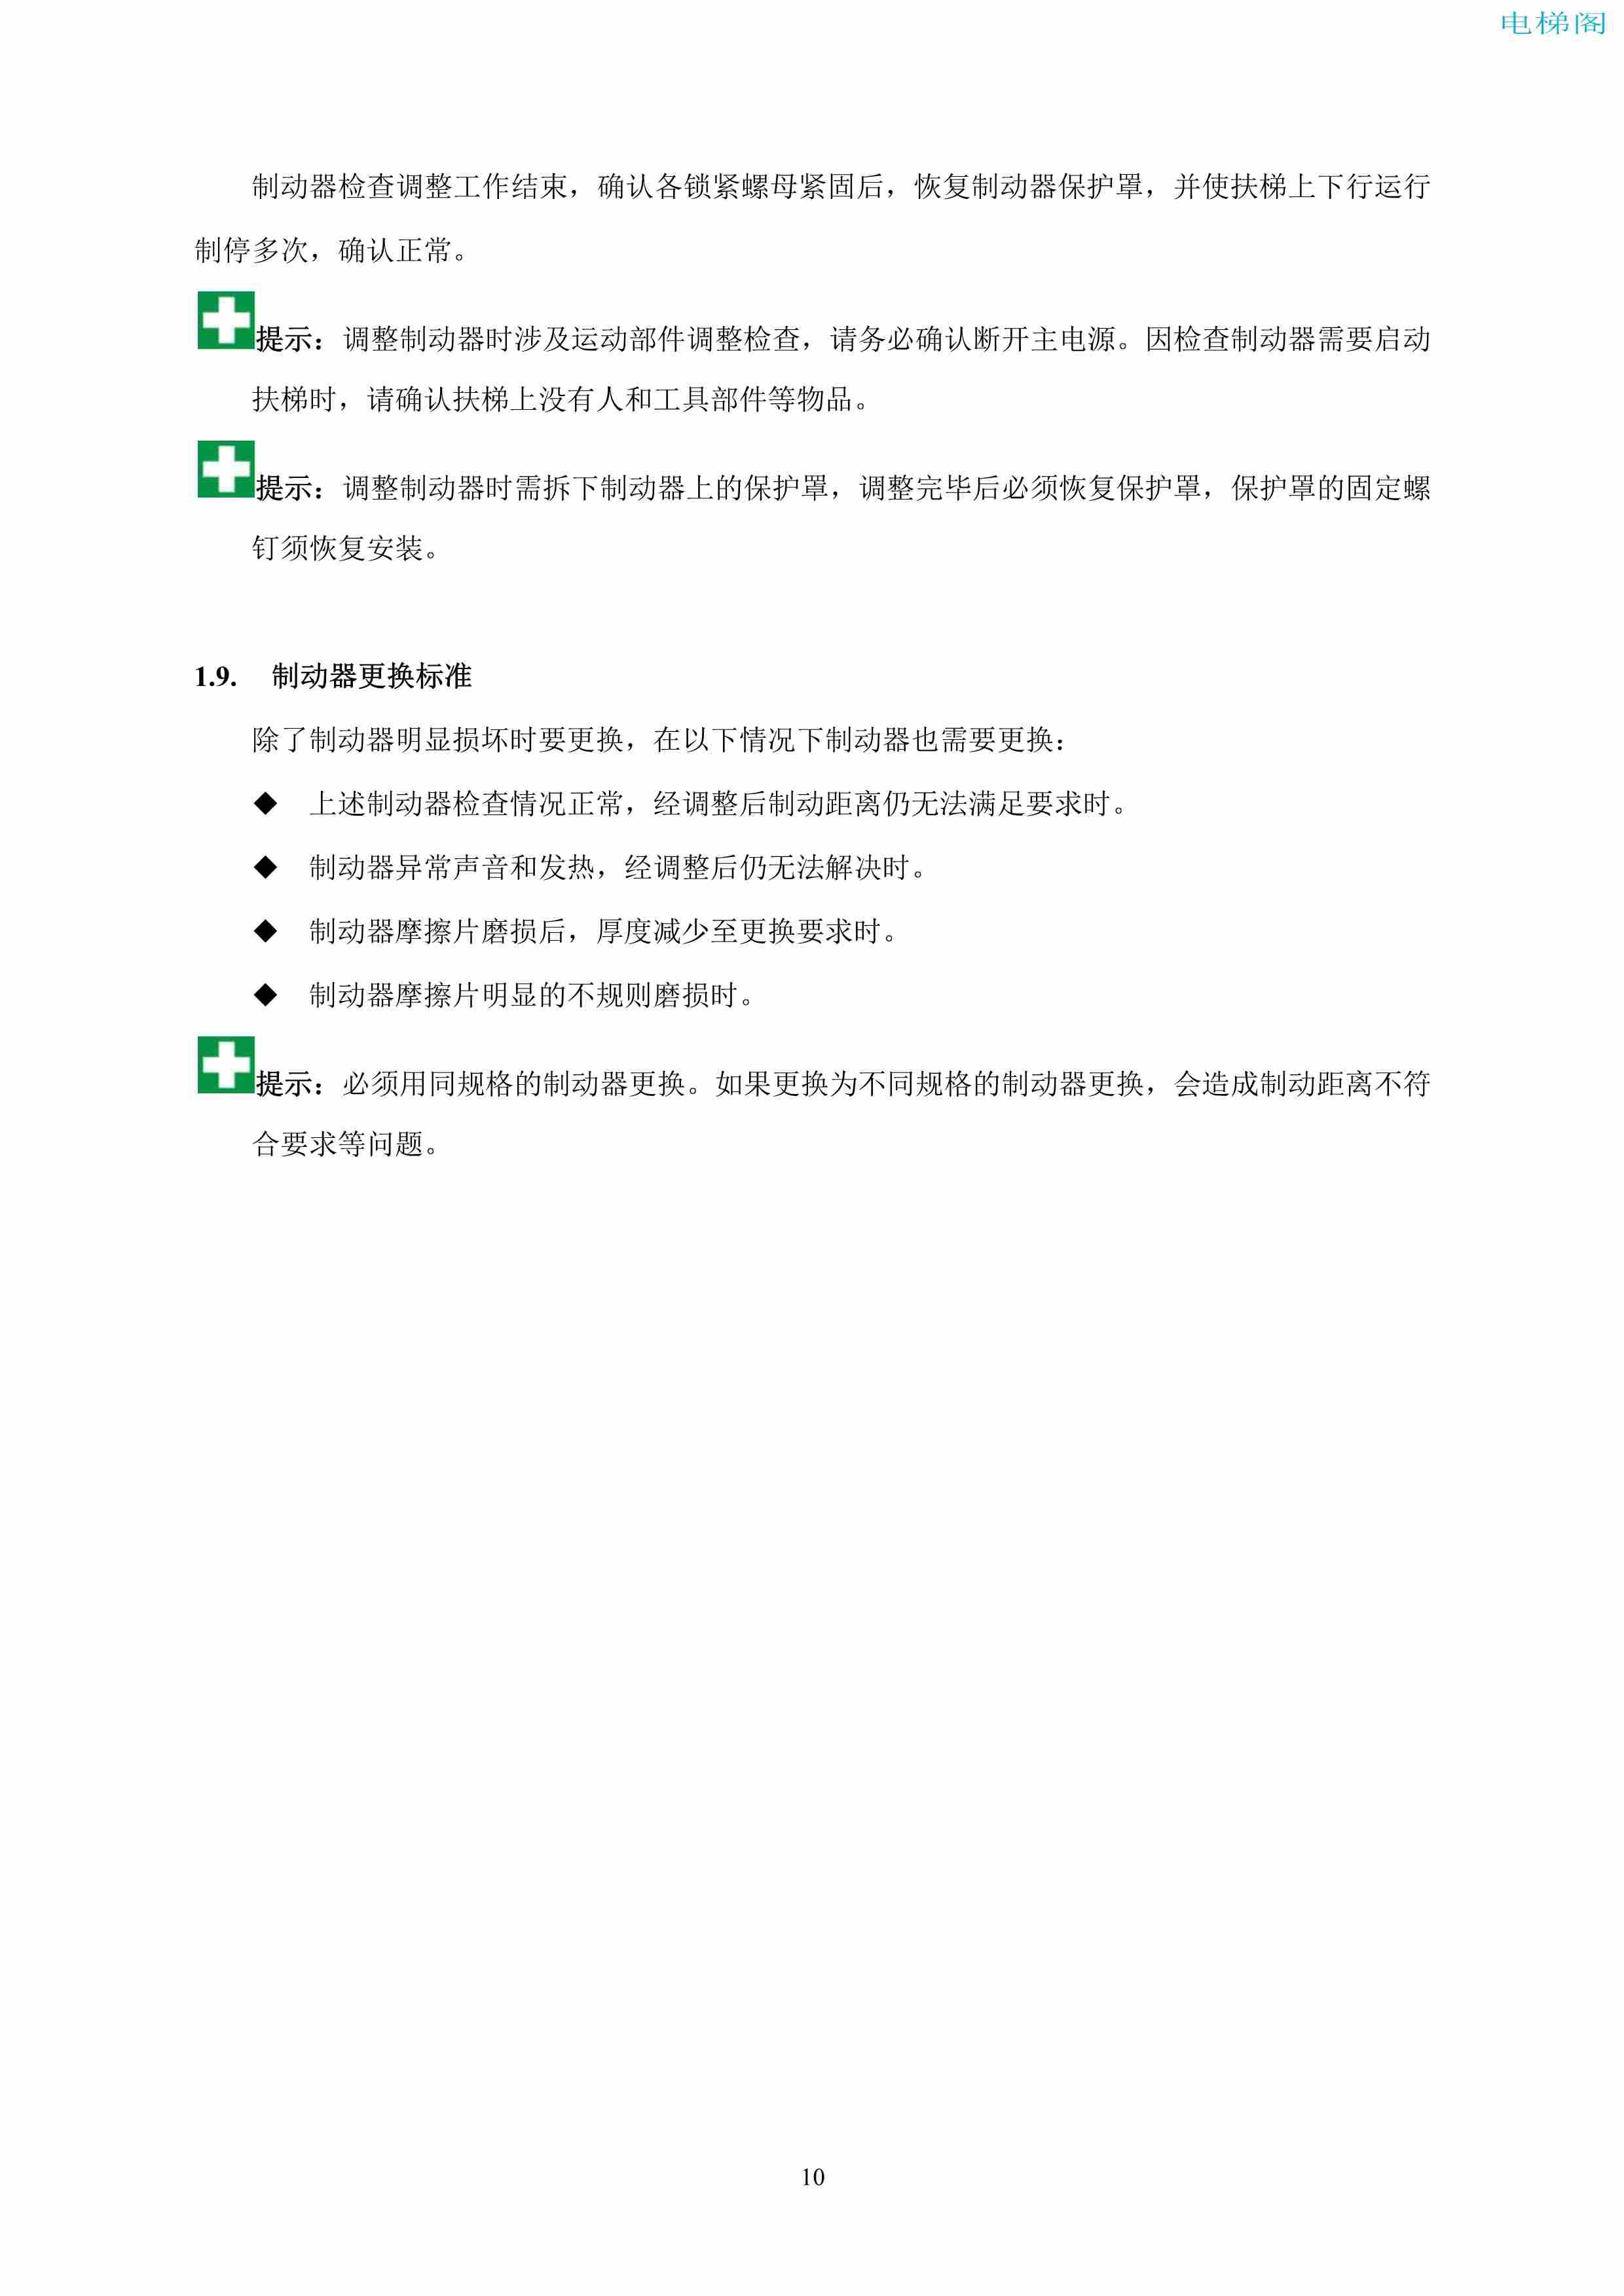 上海三菱电梯有限公司自动扶梯制动器维护作业要领汇编_11.jpg